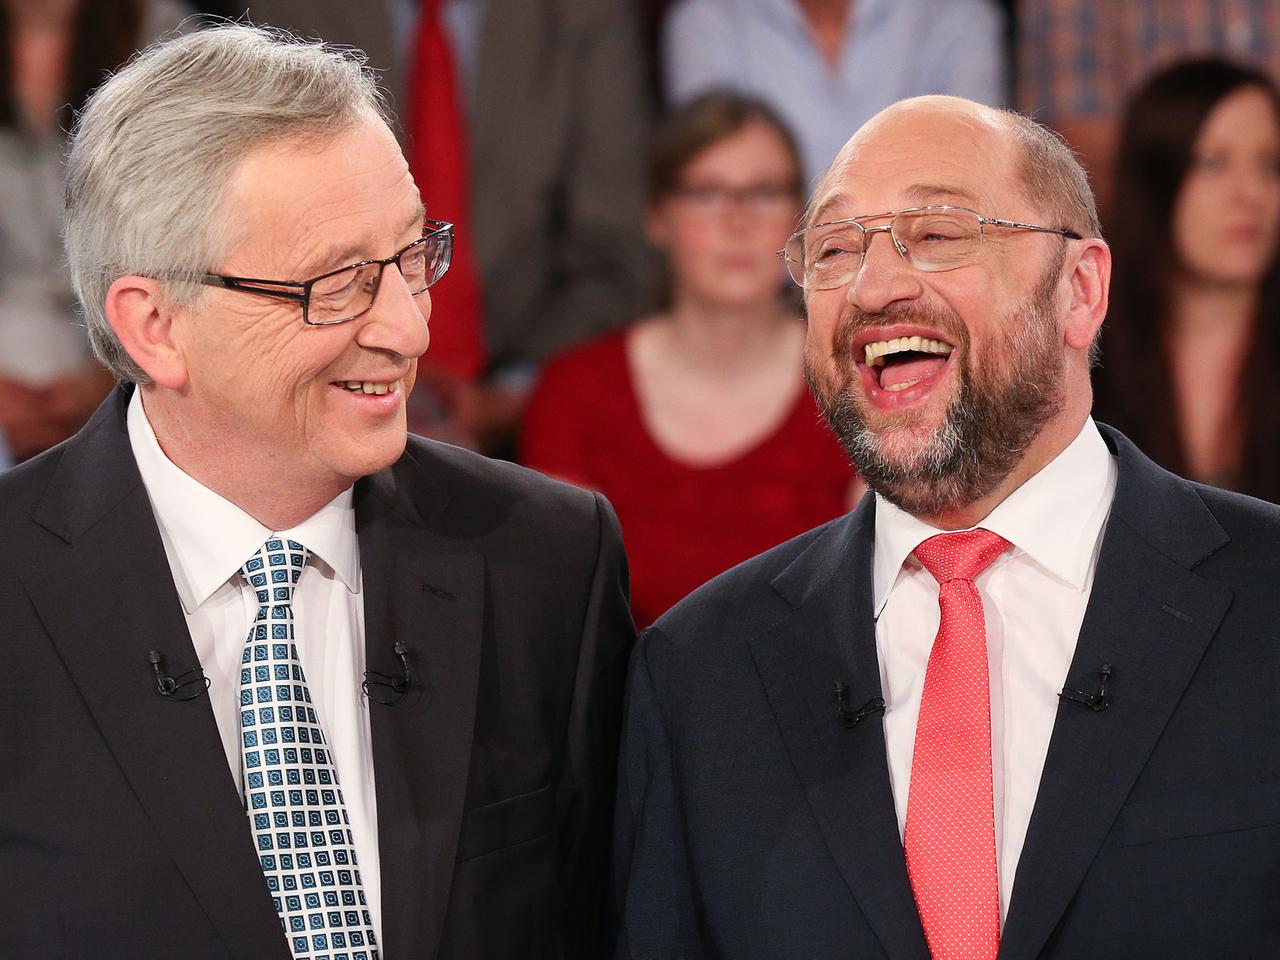 Jean-Claude Juncker und Martin Schulz lachen im Fernsehstudio miteinander